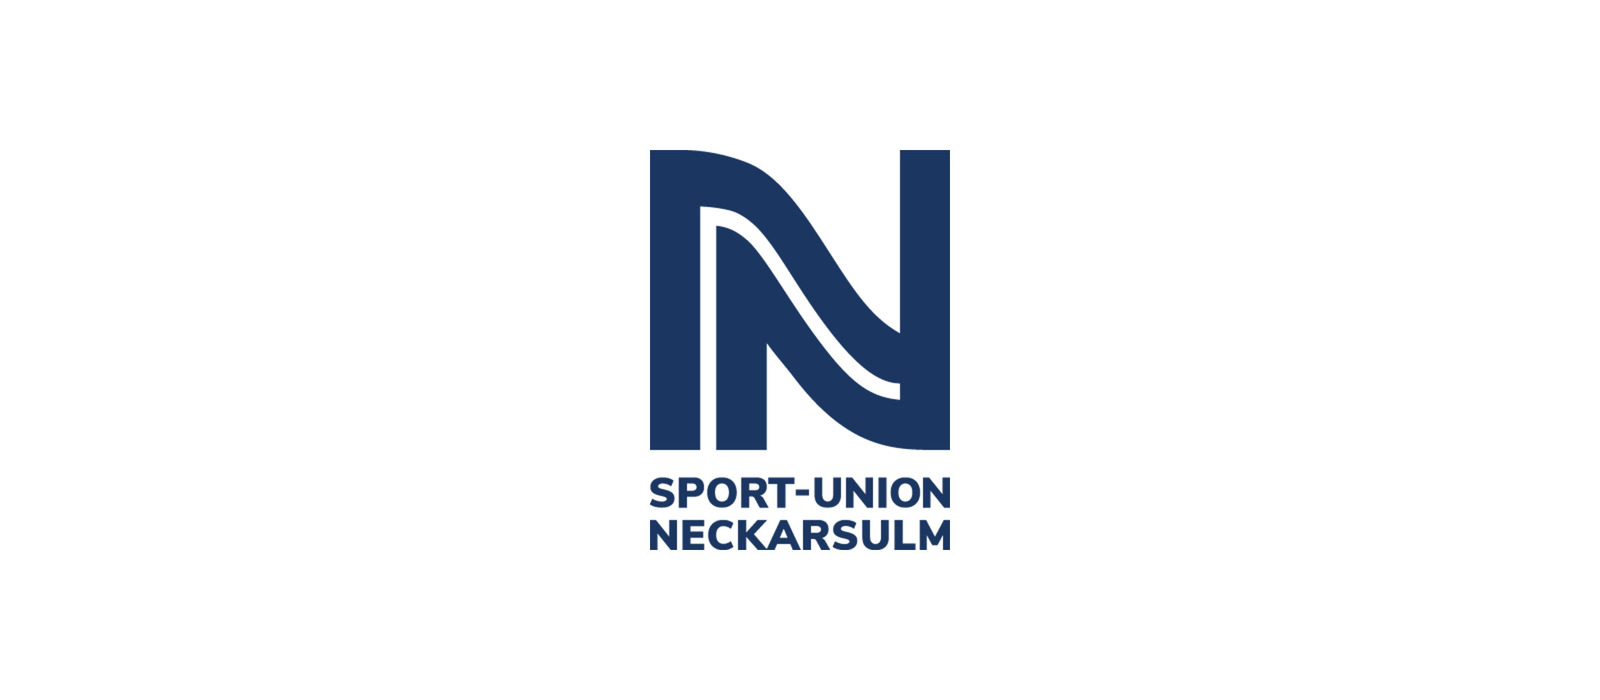 Sport-Union Neckarsulm vs BSV Sachsen Zwickau